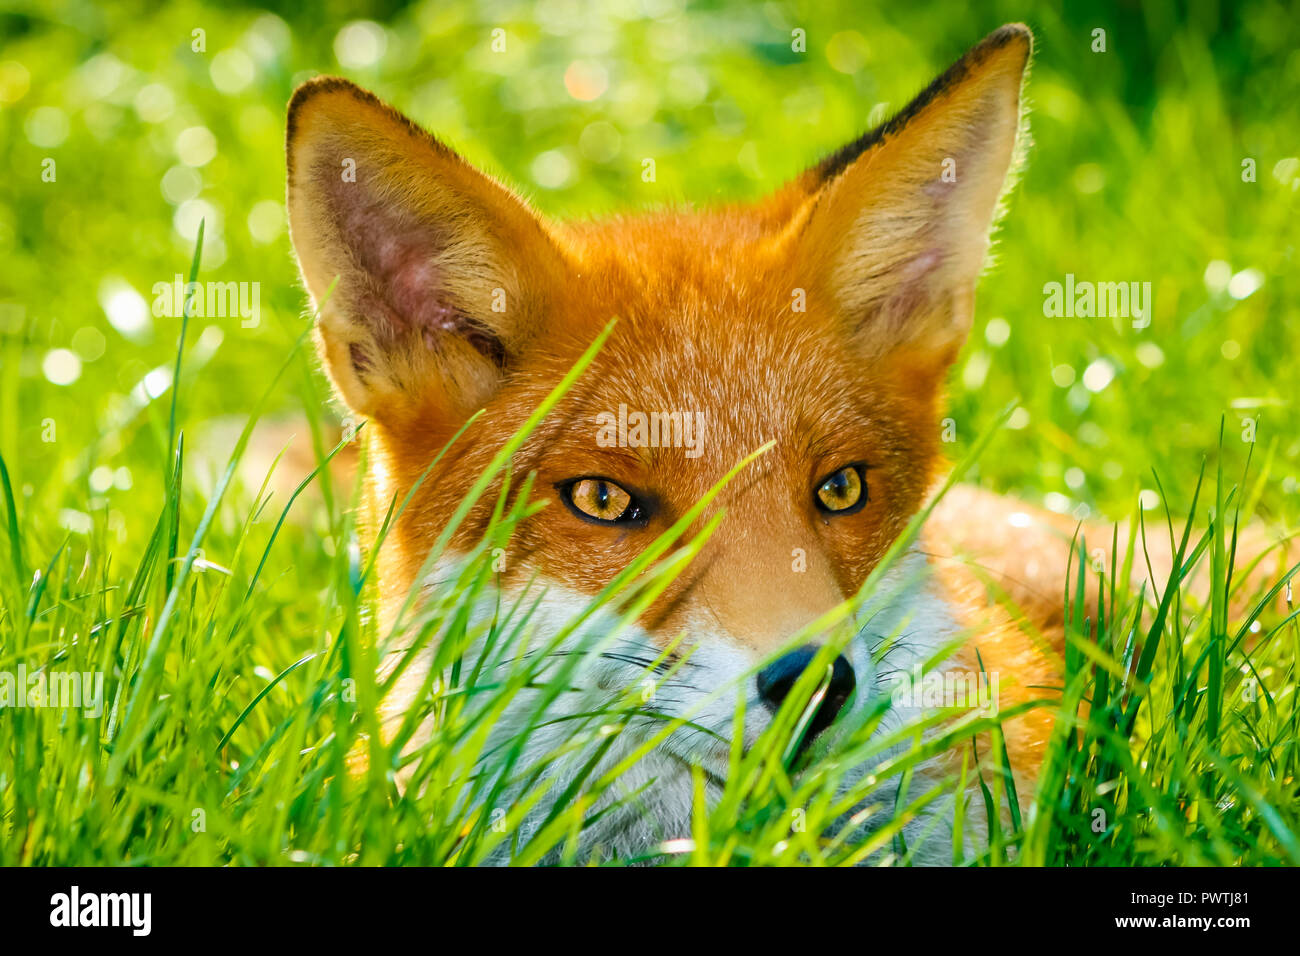 Fox, selvatici, nativo, iconico British mammifero. Una chiusura di una giovane volpe prevista nel frizzante erba verde durante il periodo estivo. Nome scientifico: Vulpes vulpes Foto Stock